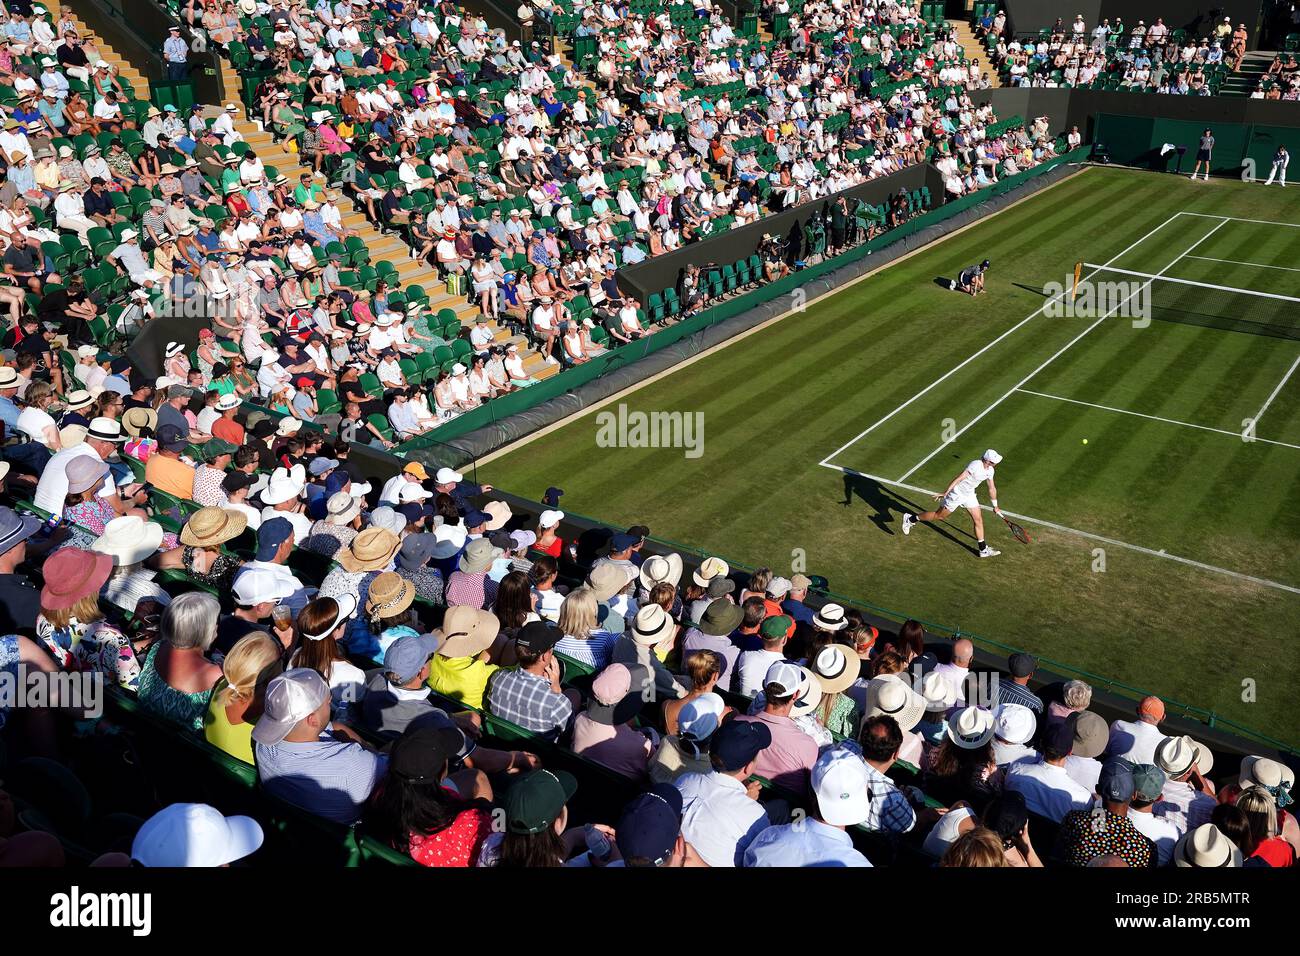 Vista generale della partita tra Denis Shapovalov e Liam Broady nel quinto giorno dei Campionati di Wimbledon 2023 all'All England Lawn Tennis and Croquet Club di Wimbledon. Data immagine: Venerdì 7 luglio 2023. Foto Stock